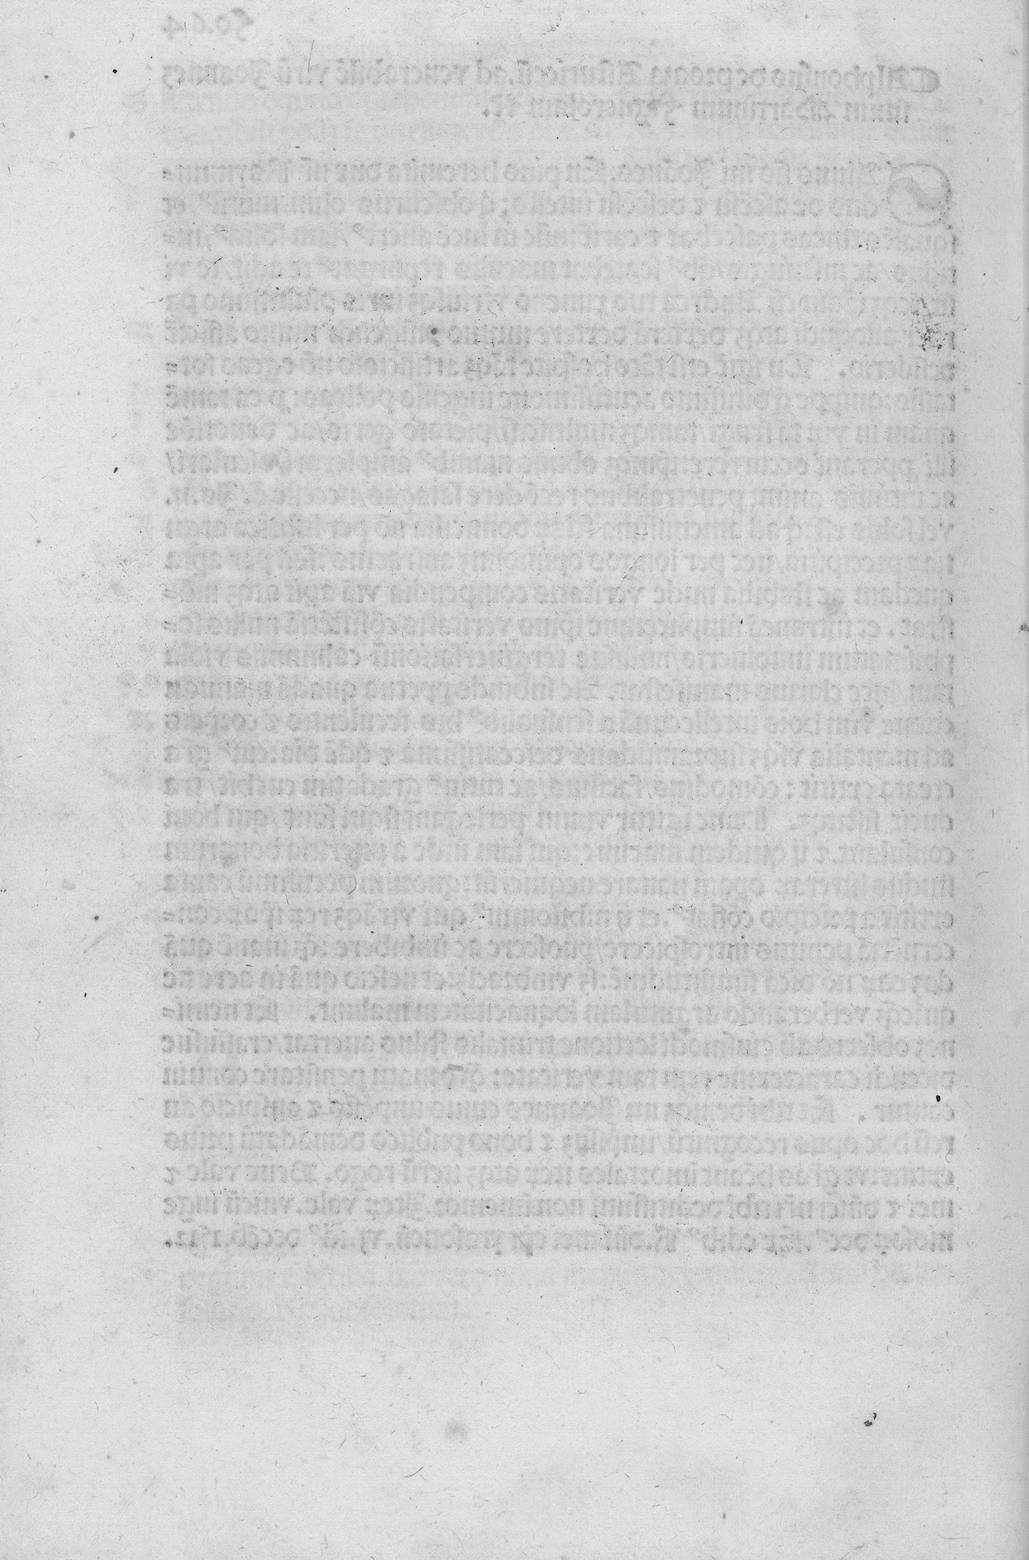 fo.64 v